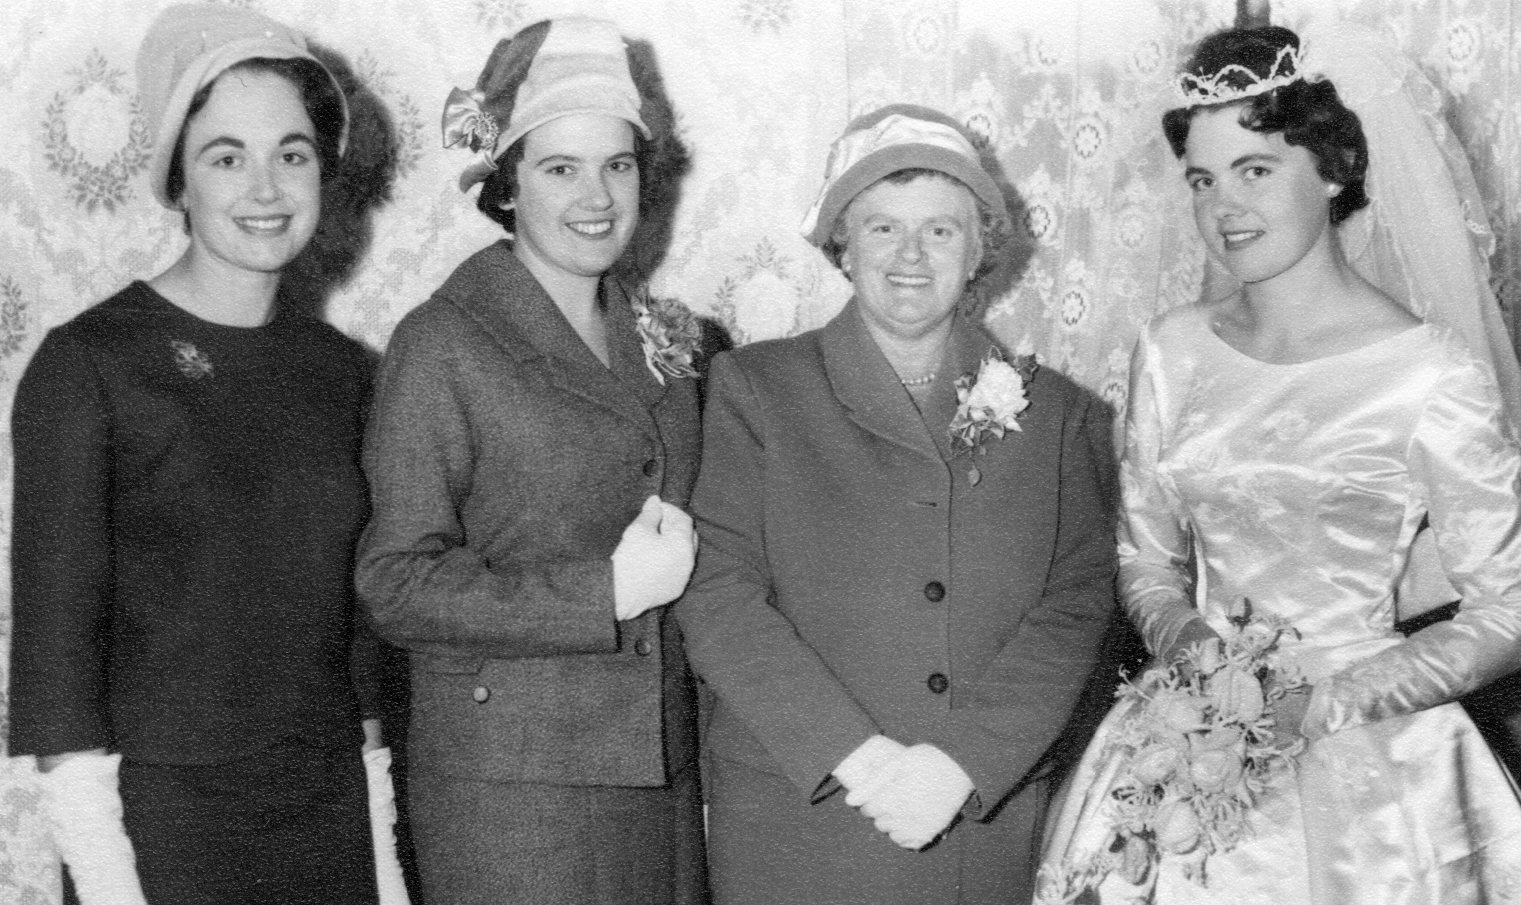 Rita Daun & her three daughters